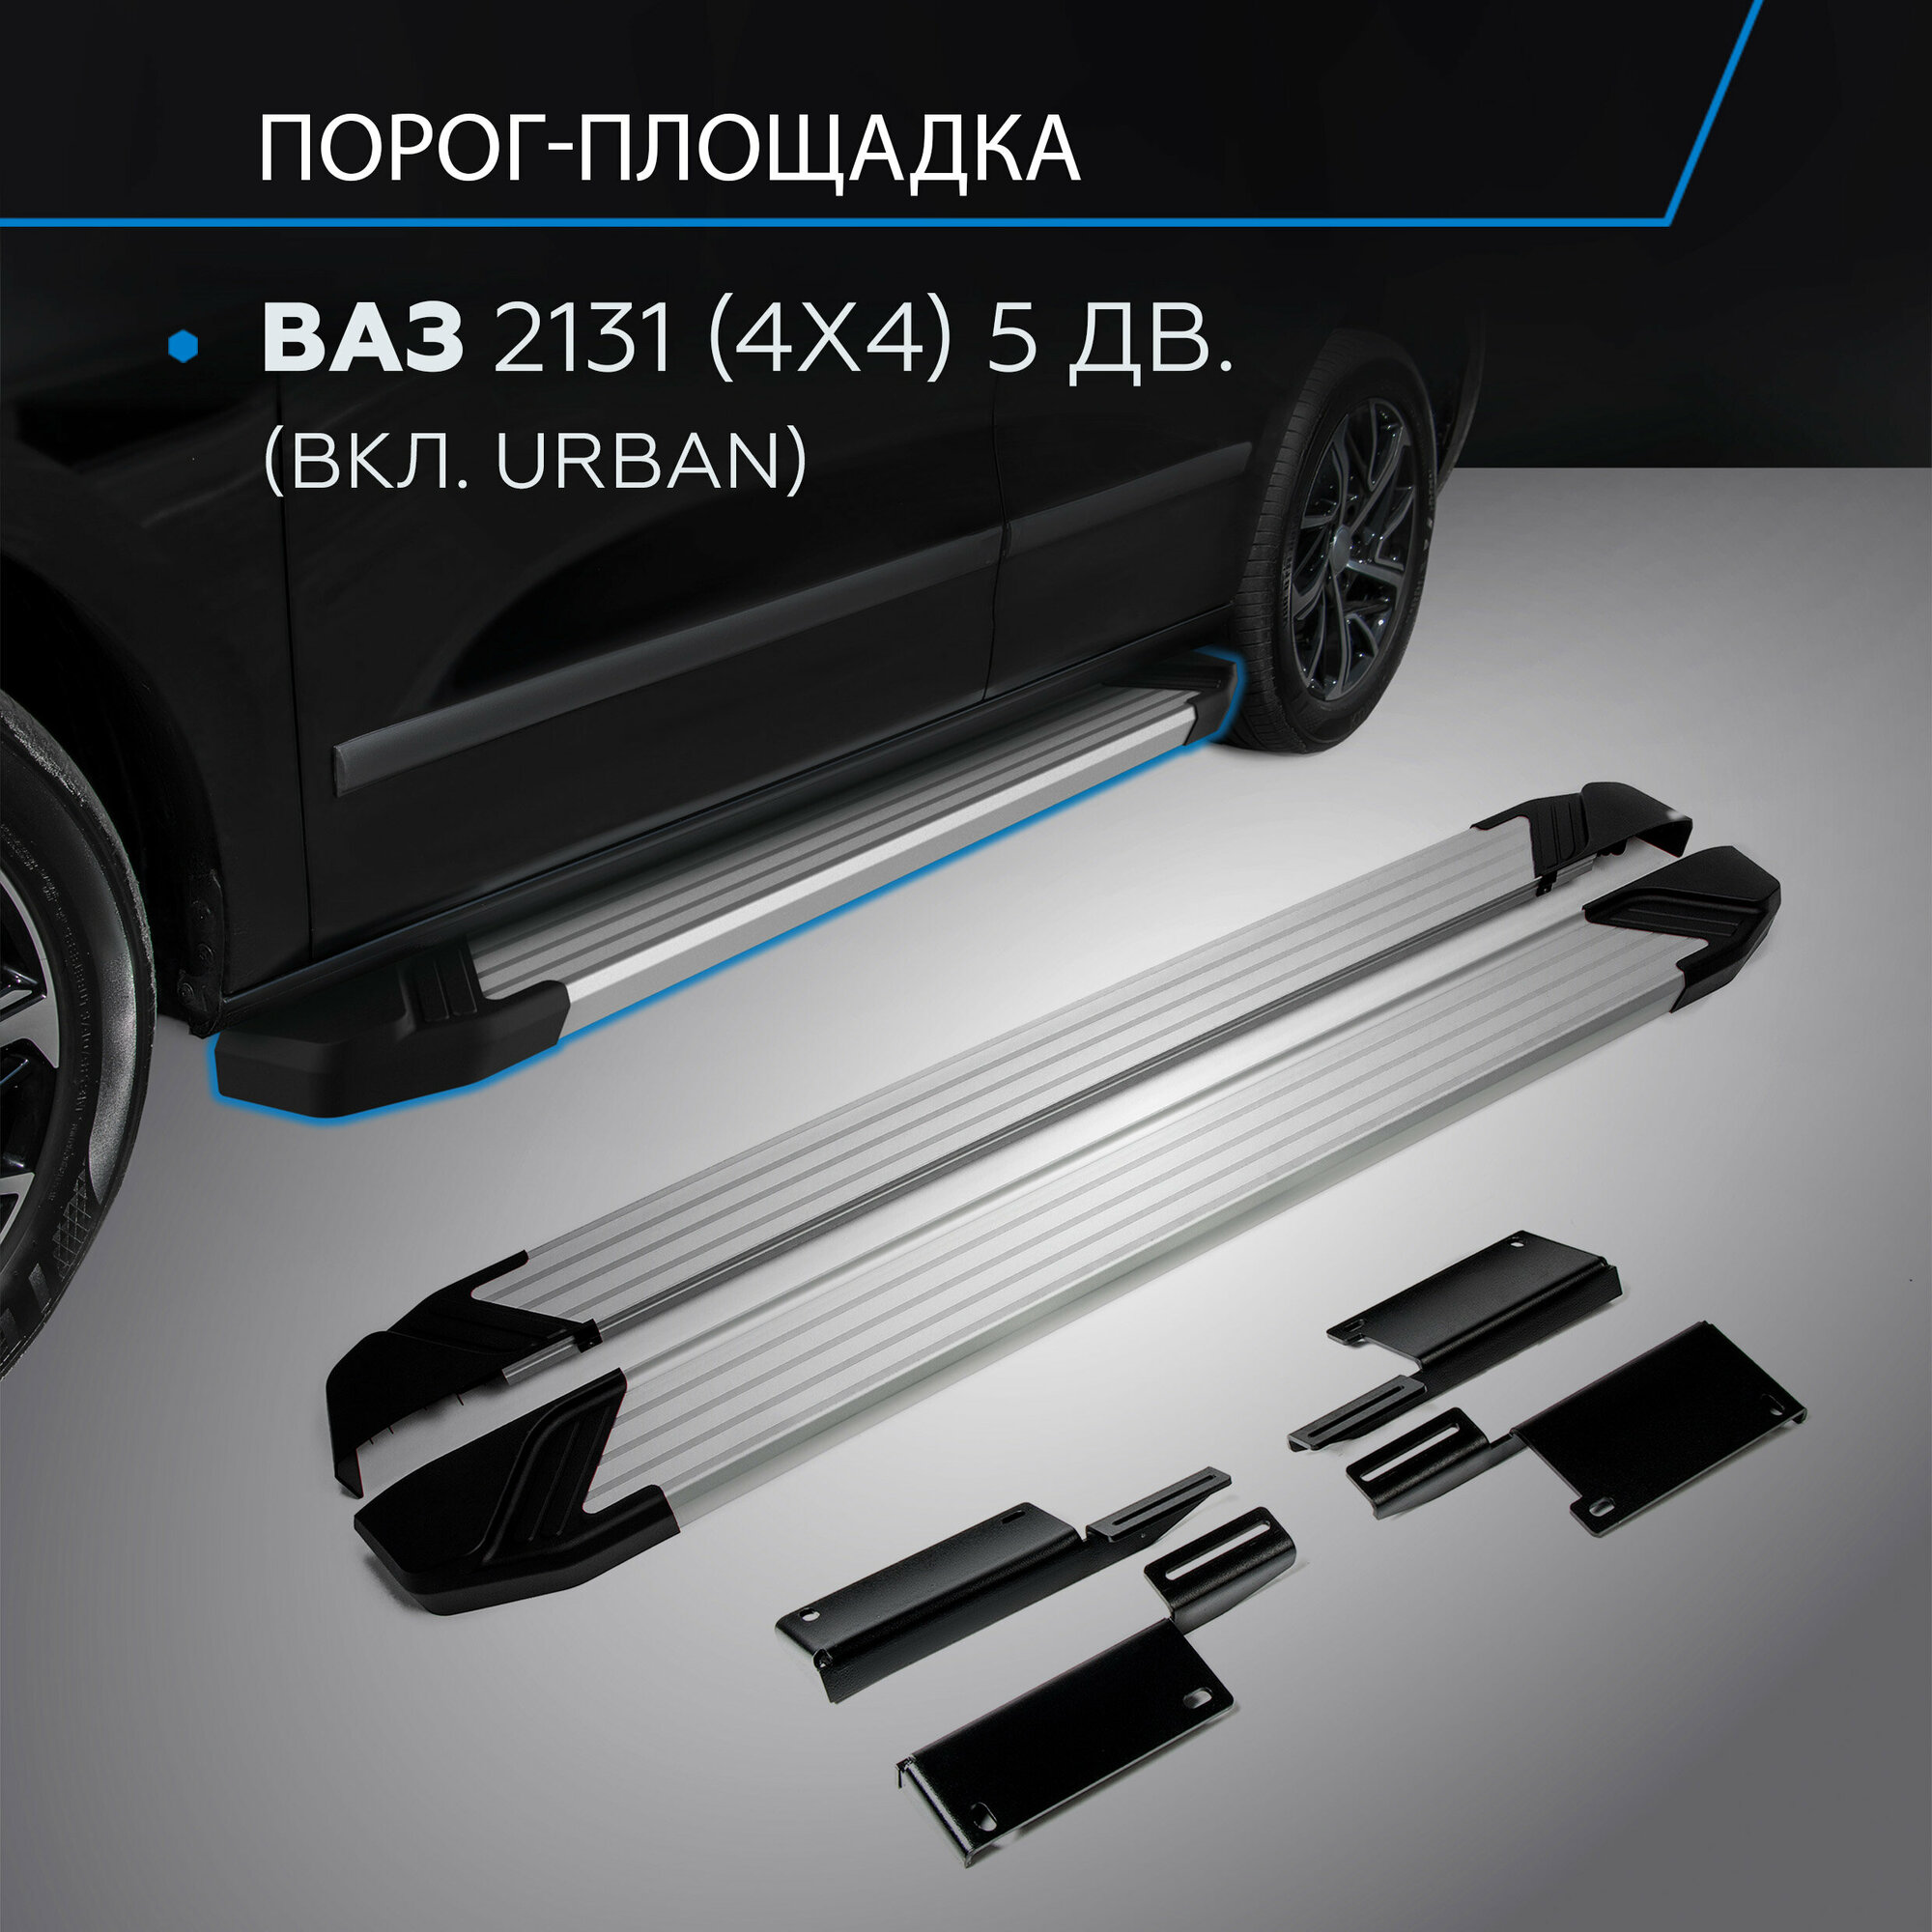 Пороги на автомобиль "Silver" Rival для ВАЗ 2131 (4x4) 5-дв. (вкл. Urban) 1993-2019 2019-н. в, 180 см, 2 шт, алюминий, F180AL.6004.1